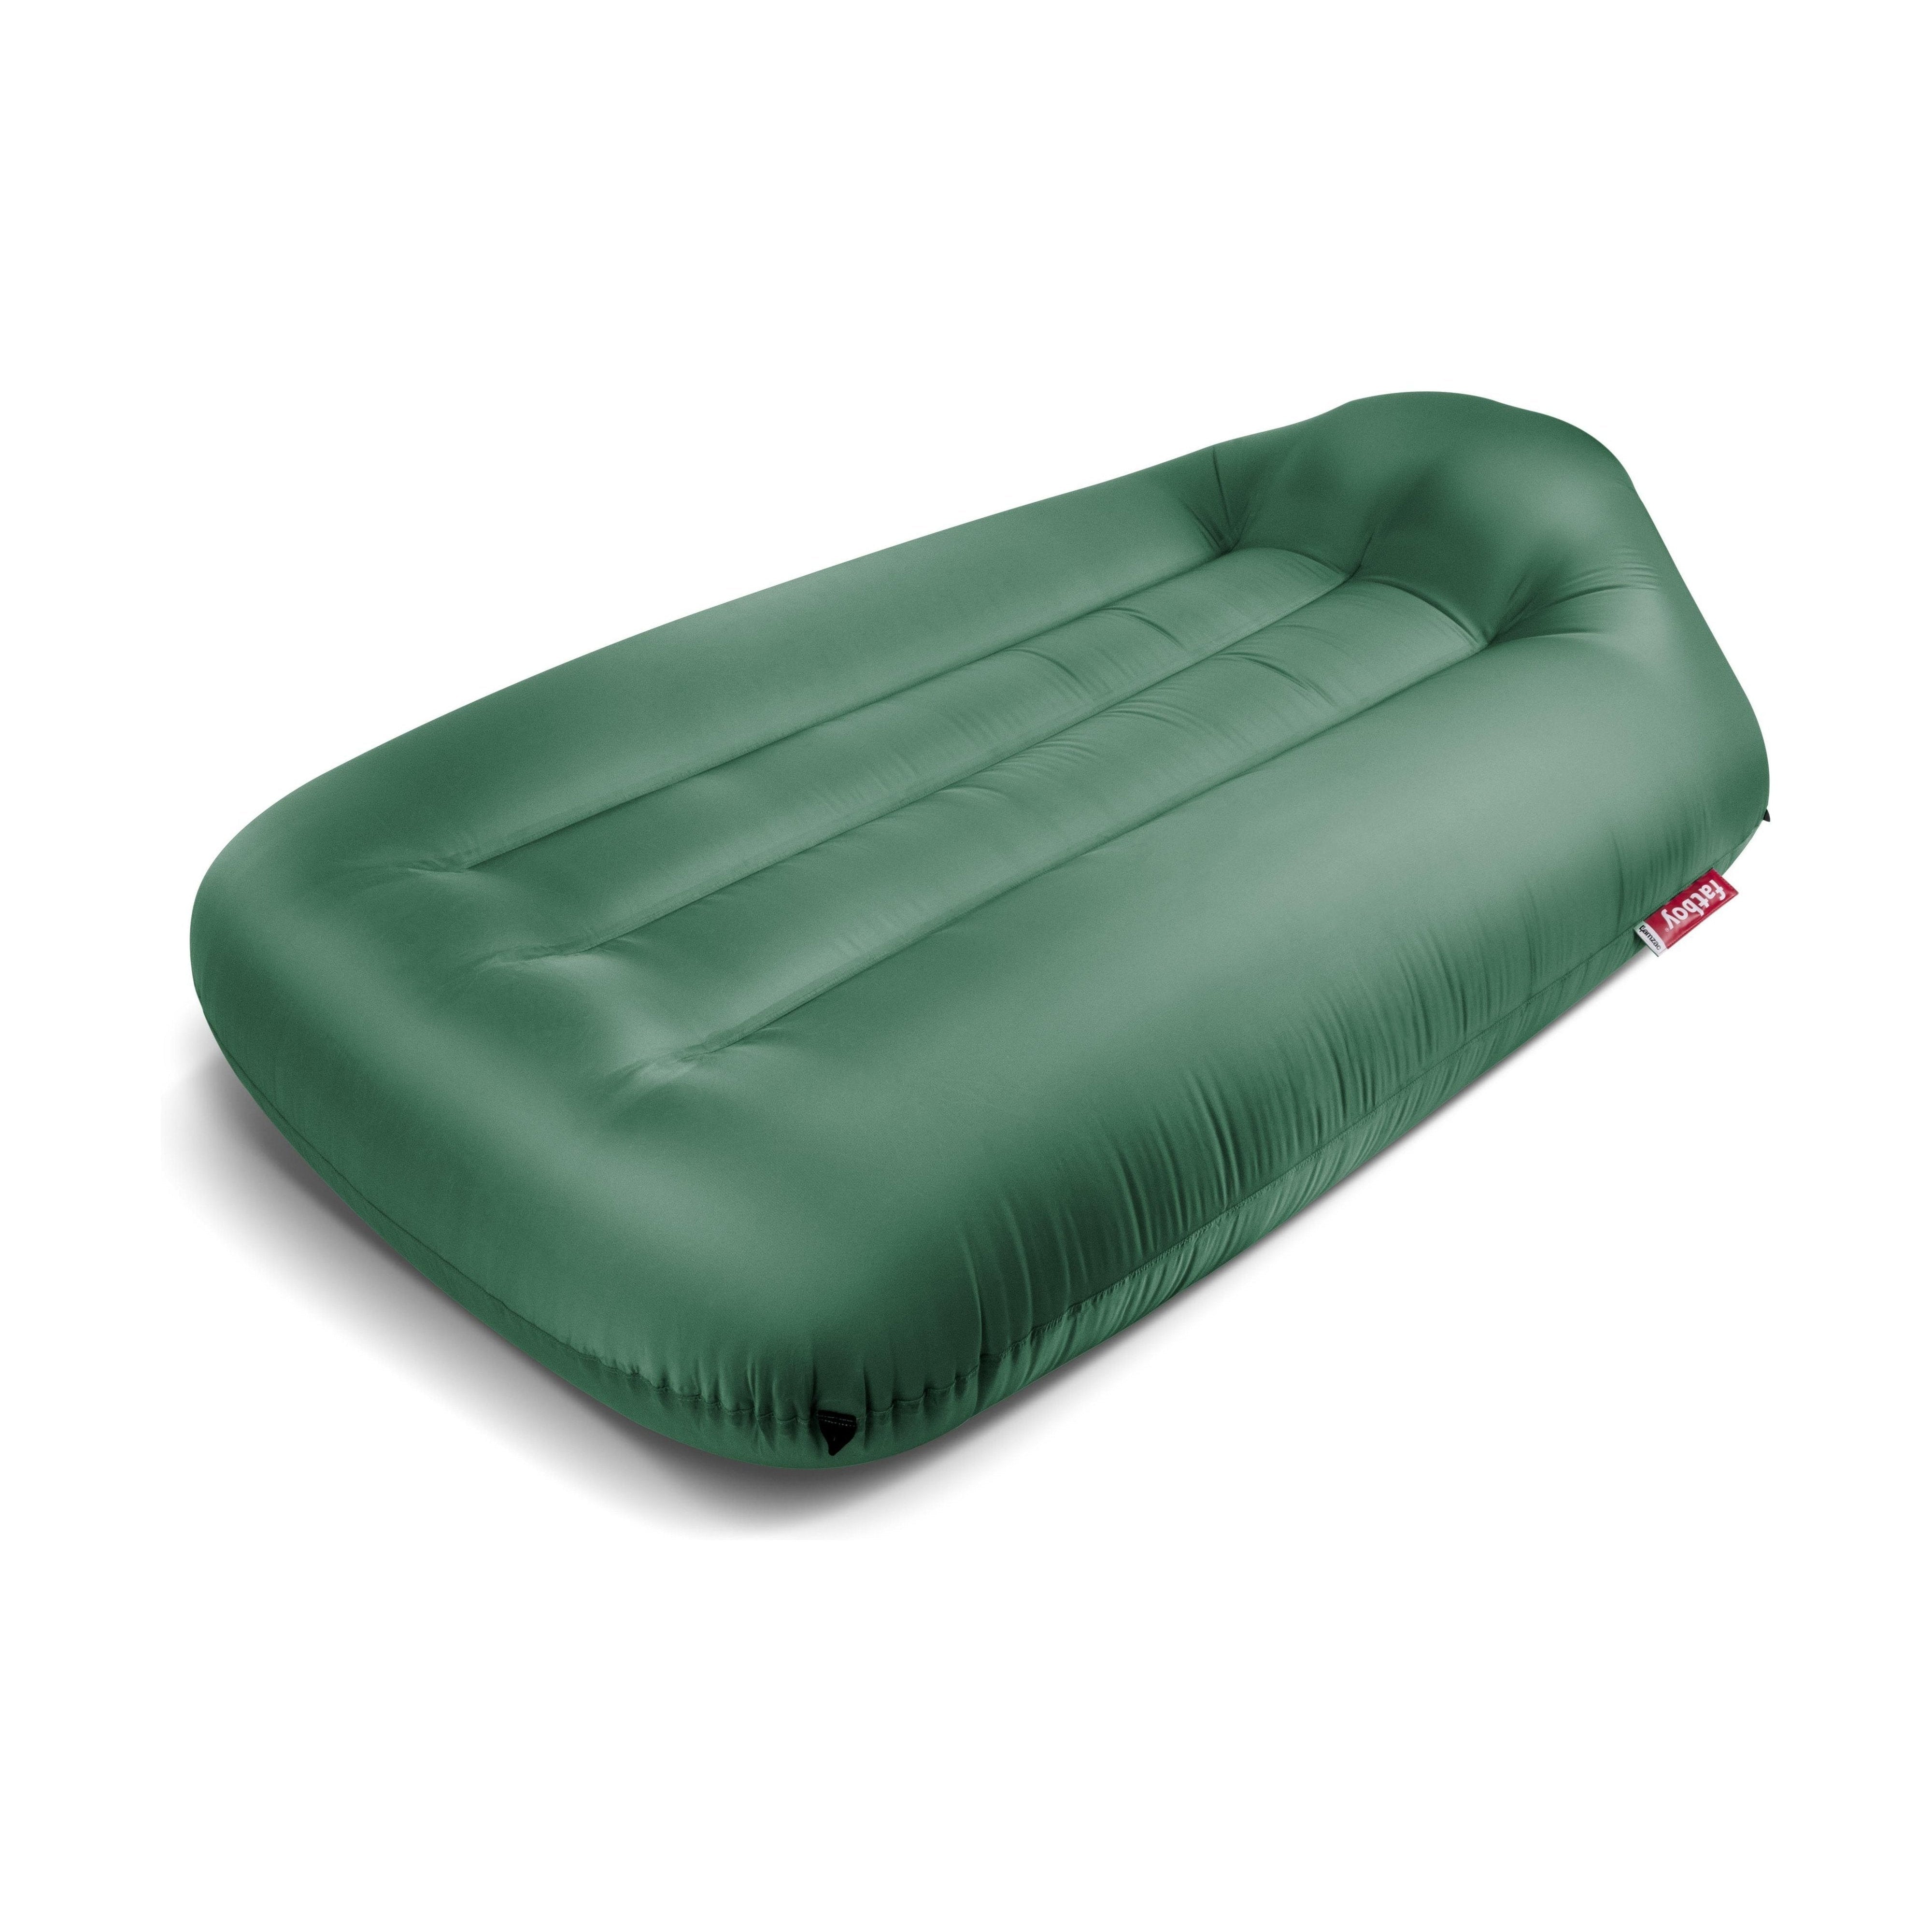 Fatboy Lamzac L Inflatable Air Sofa 3.0, Jungle Green